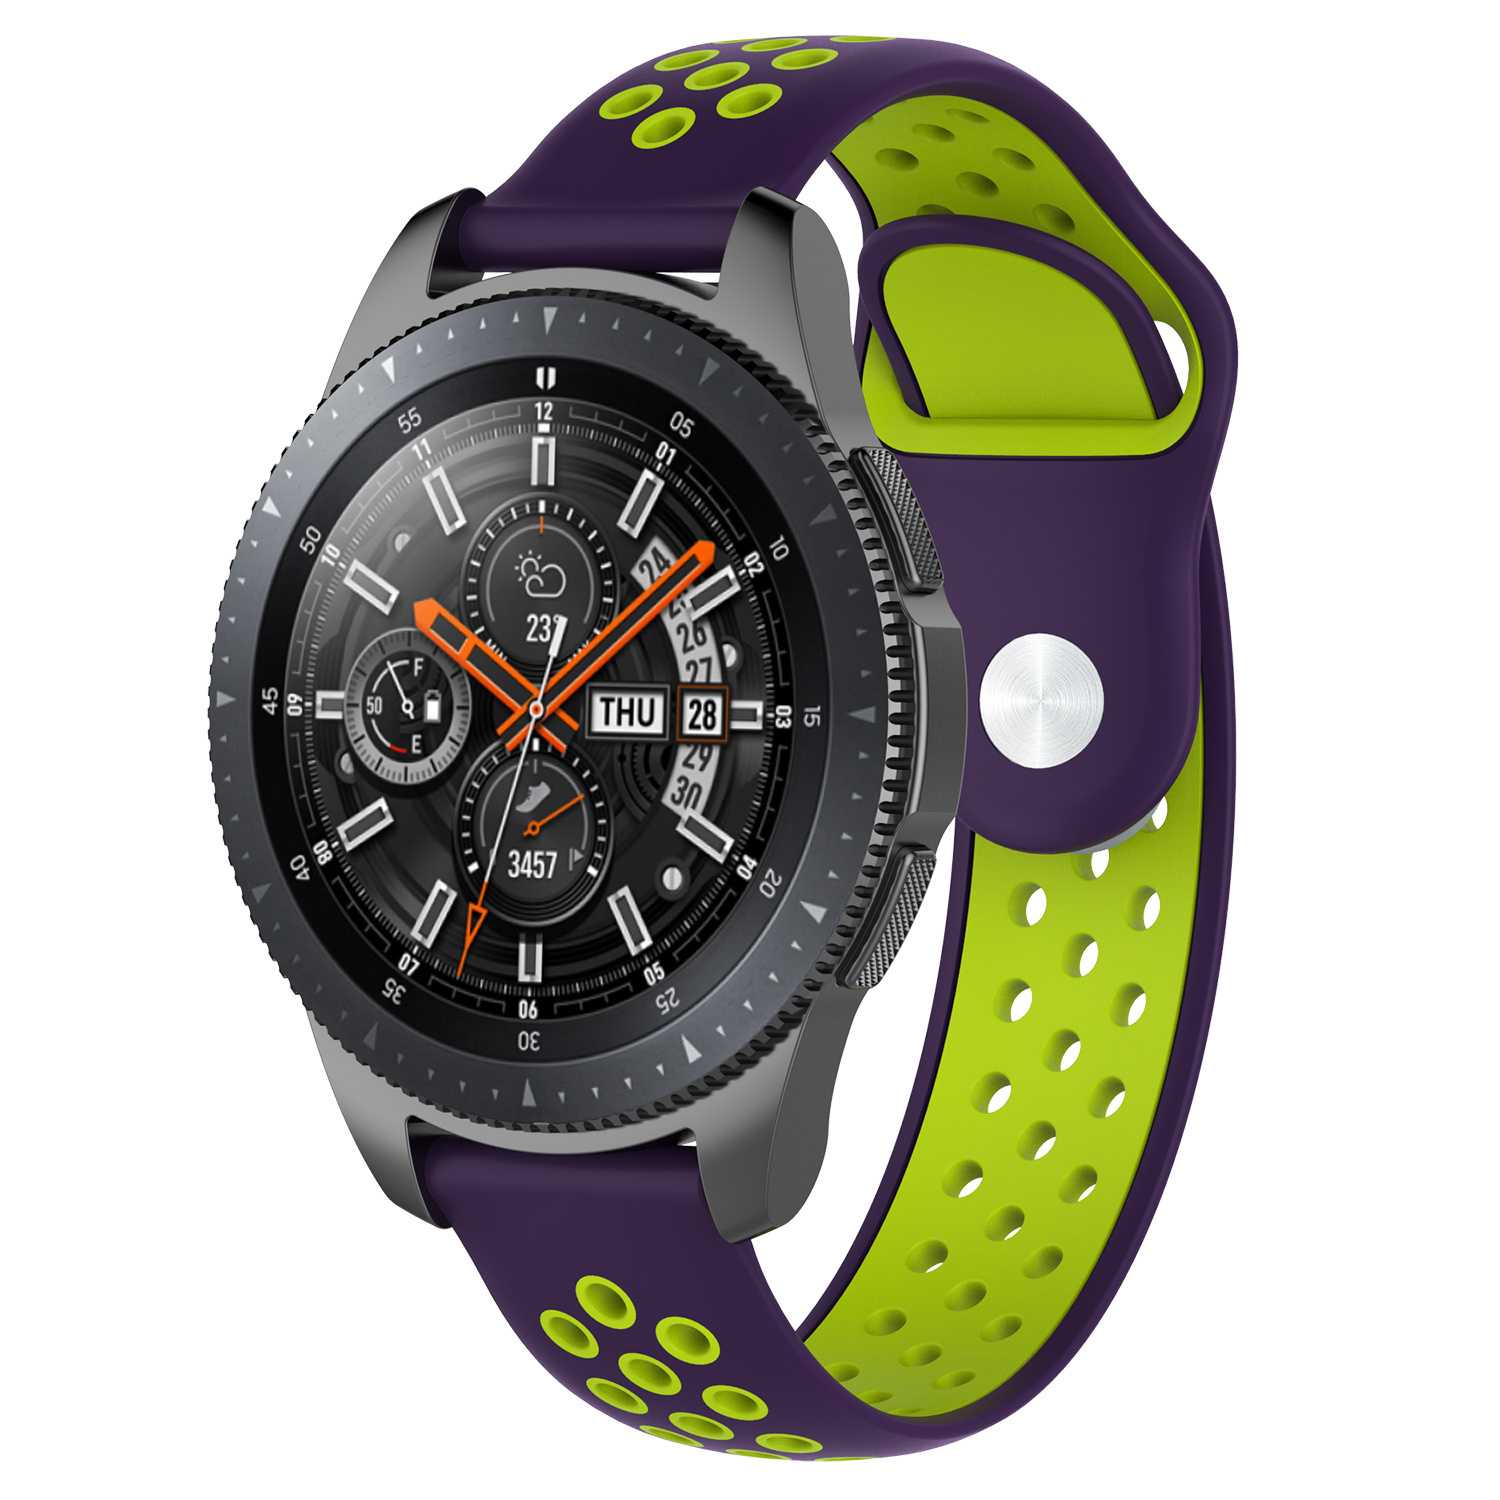 Correa deportiva doble para el Samsung Galaxy Watch - verde púrpura